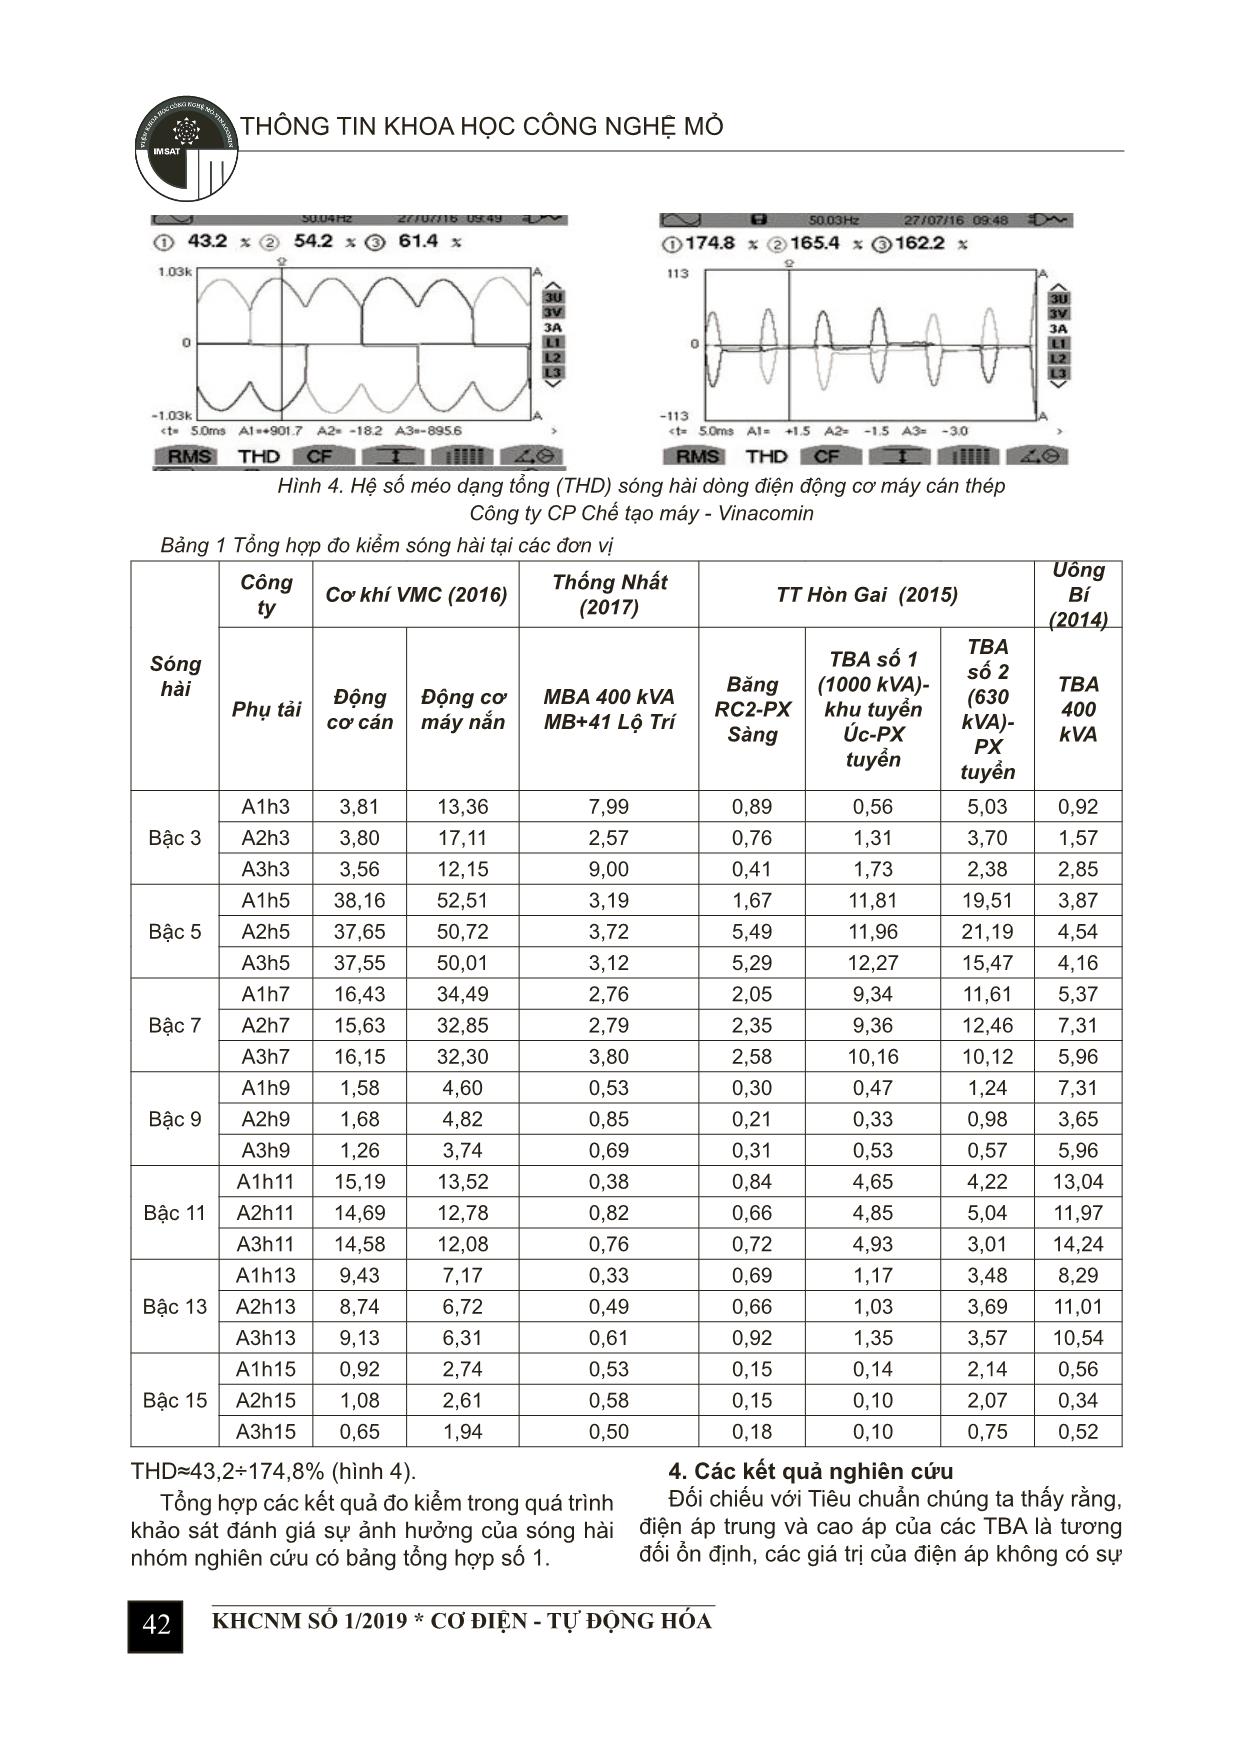 Kết quả khảo sát, đánh giá chất lượng cung cấp điện của mạng điện mỏ vùng Quảng Ninh trang 4